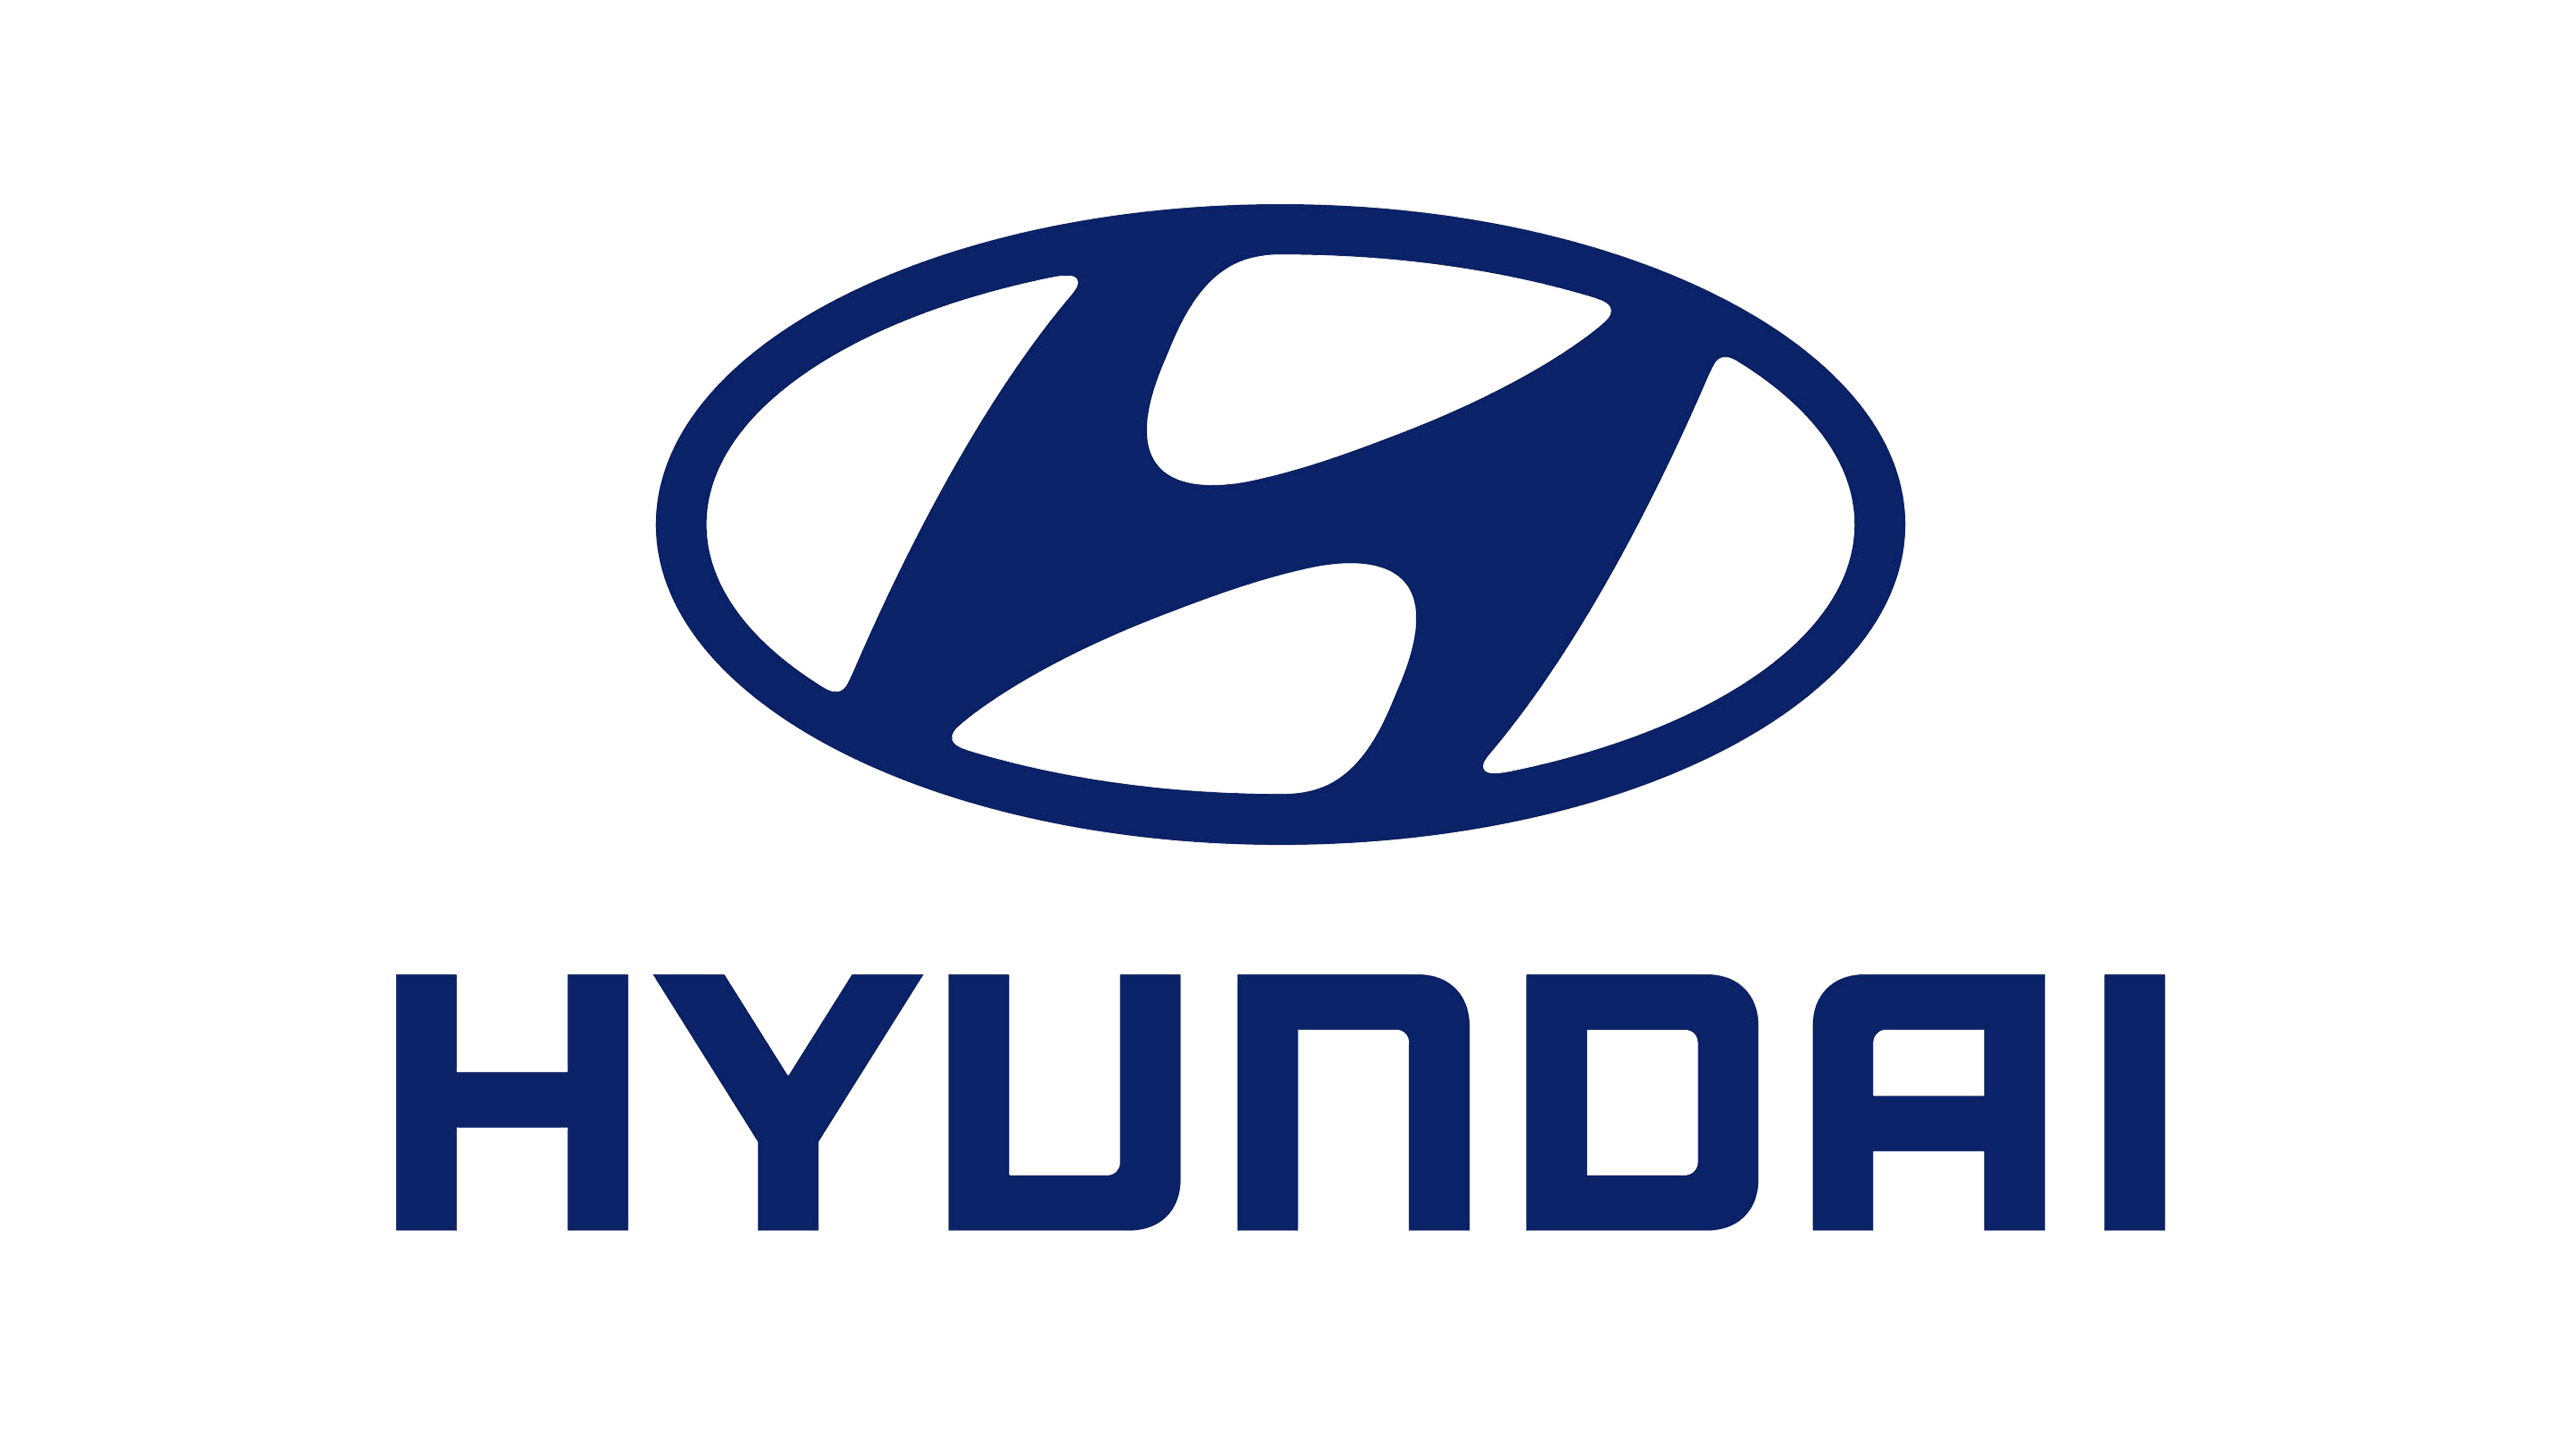 Hyundai Logo, Hyundai Motor C